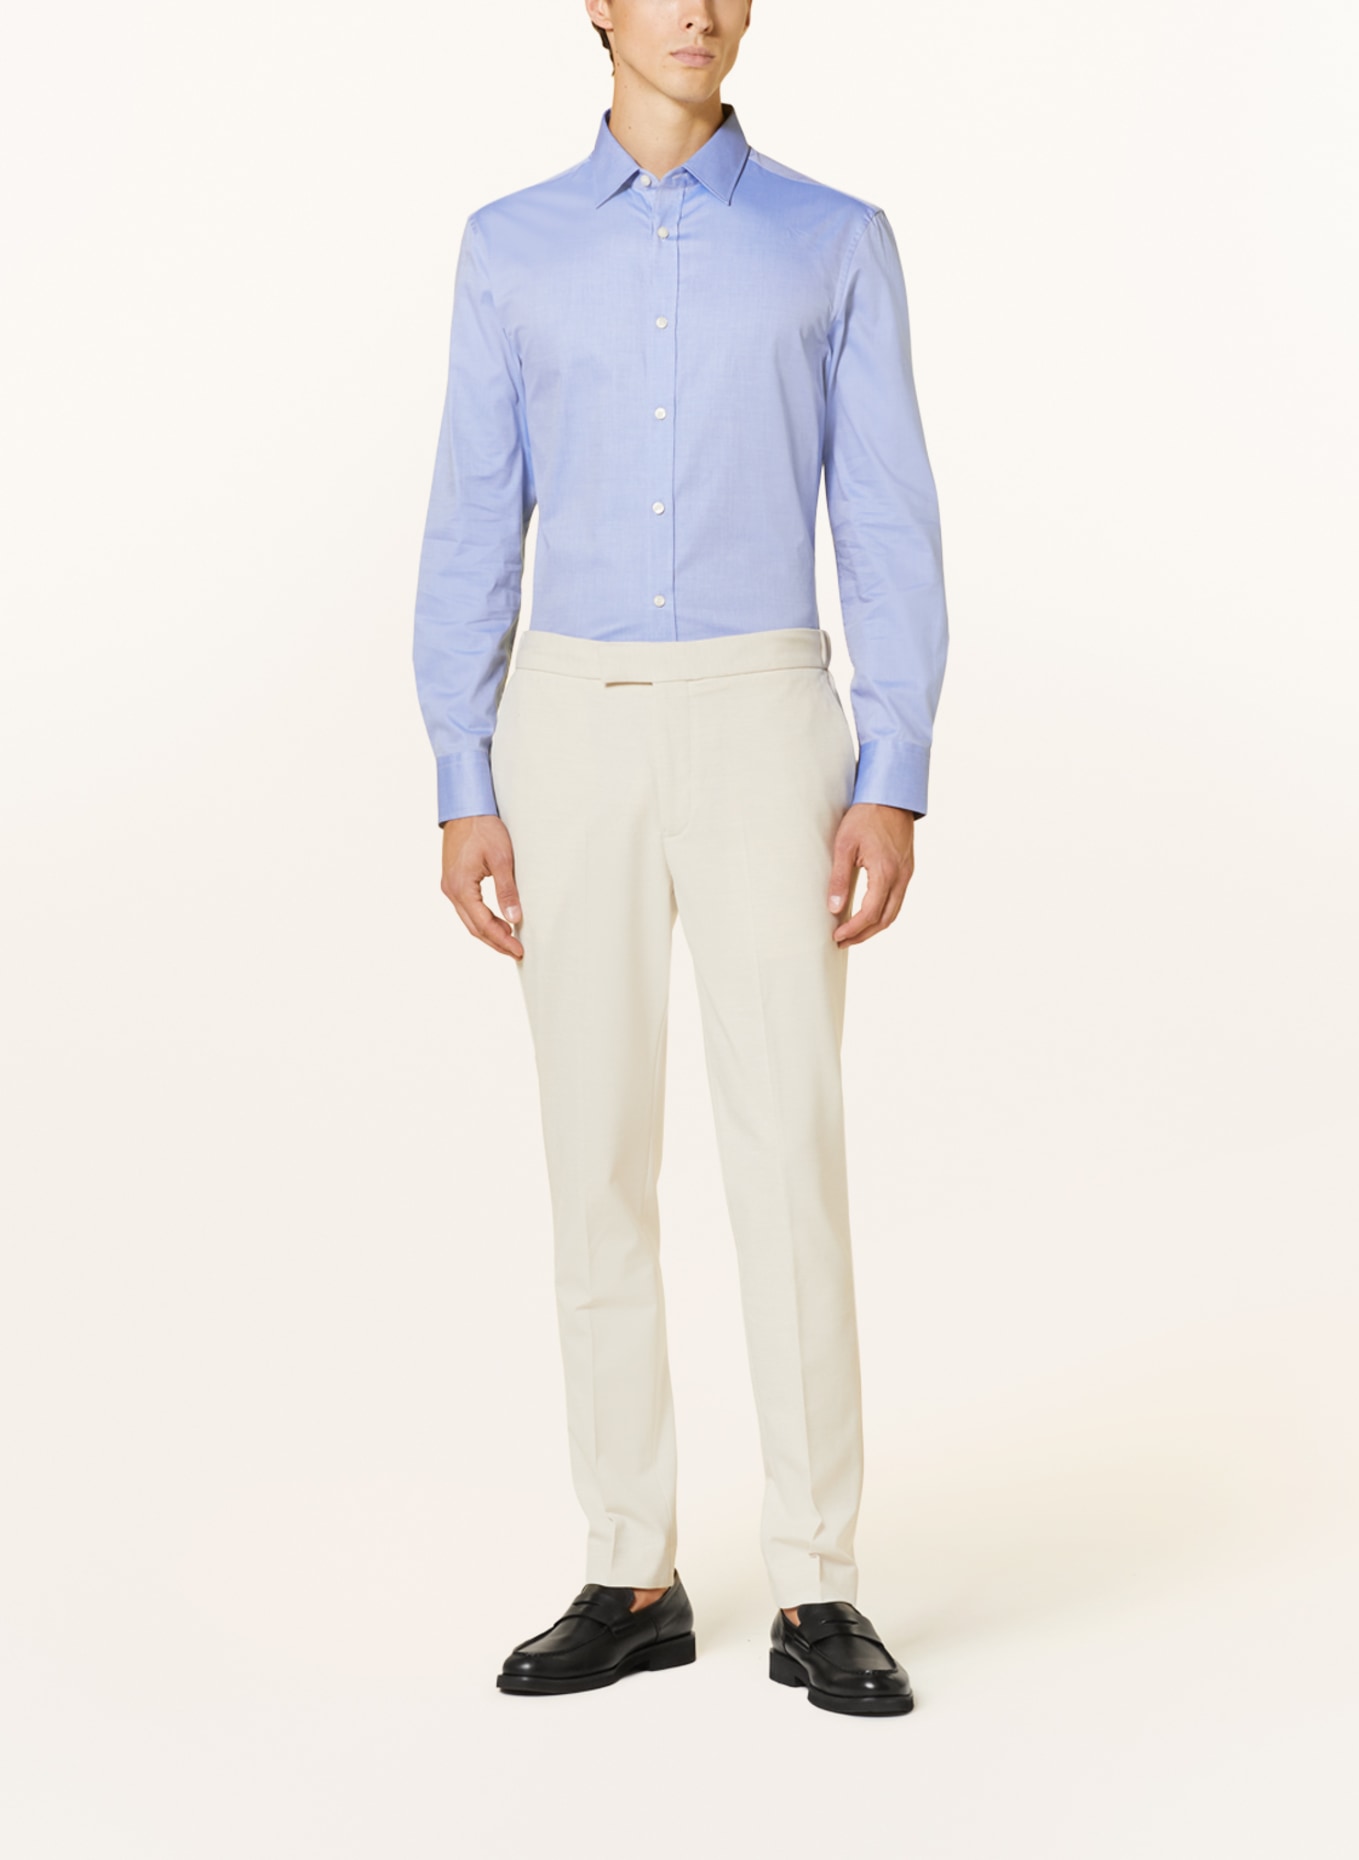 TIGER OF SWEDEN Shirt ADLEY slim fit, Color: LIGHT BLUE (Image 2)